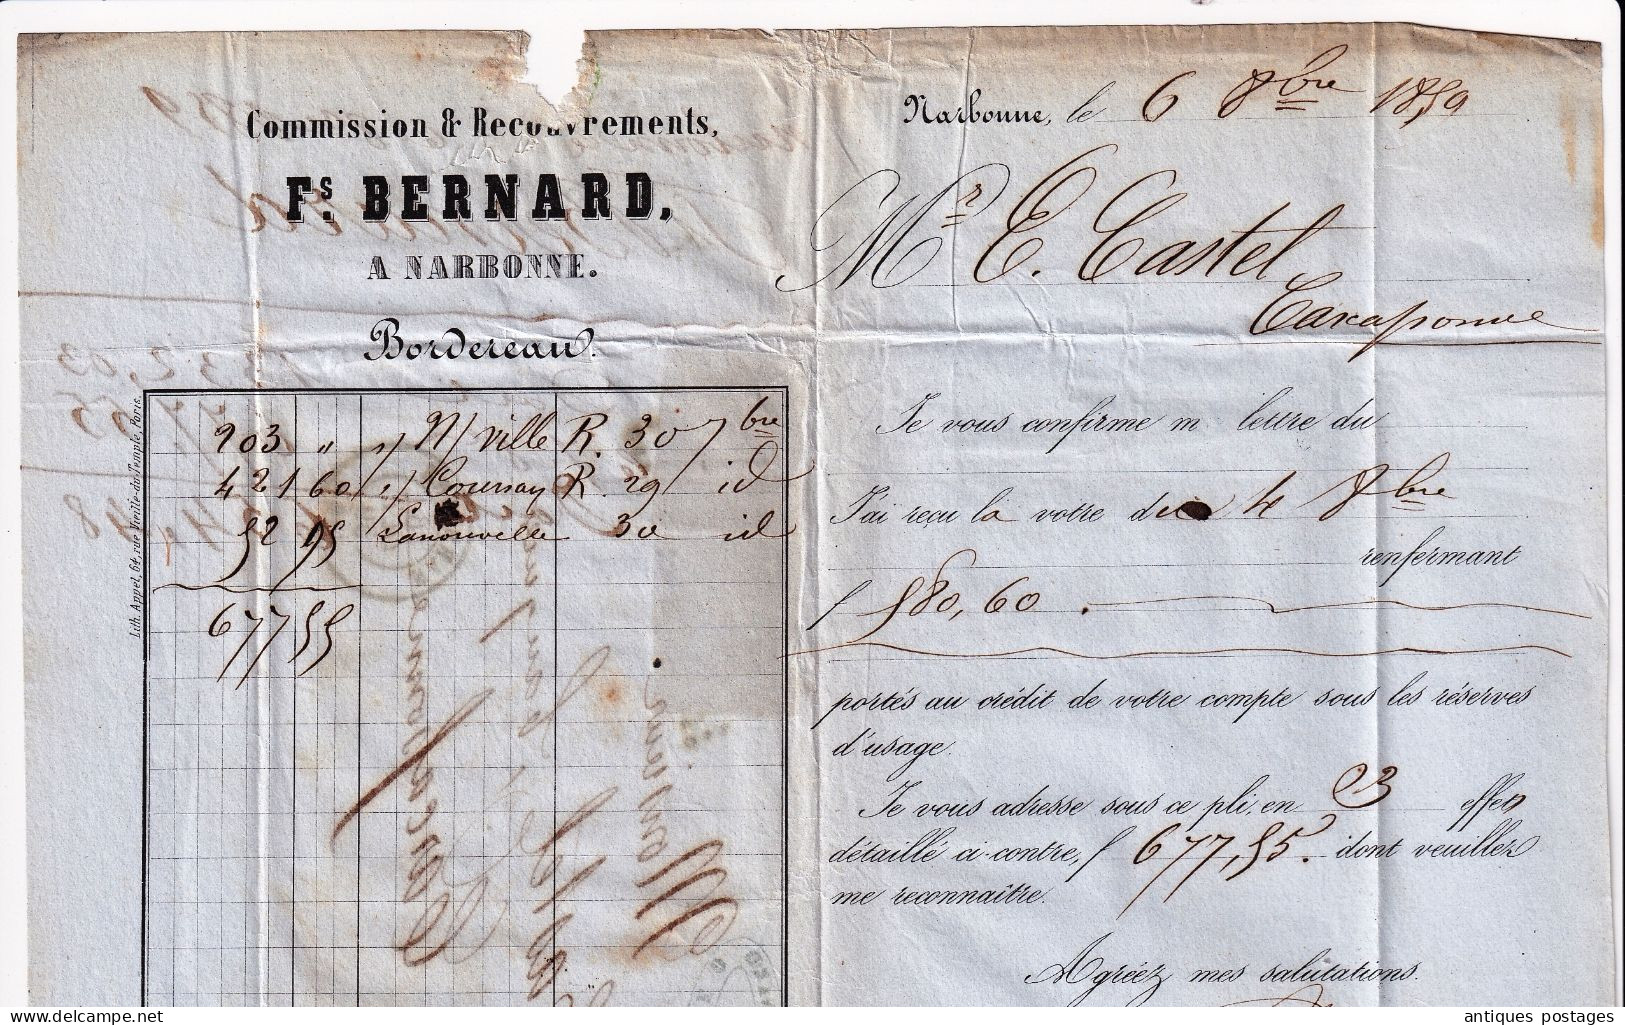 2 Timbres Napoléon III non dentelé Lettre 1859 Narbonne François Bernard Aude pour Carcassonne